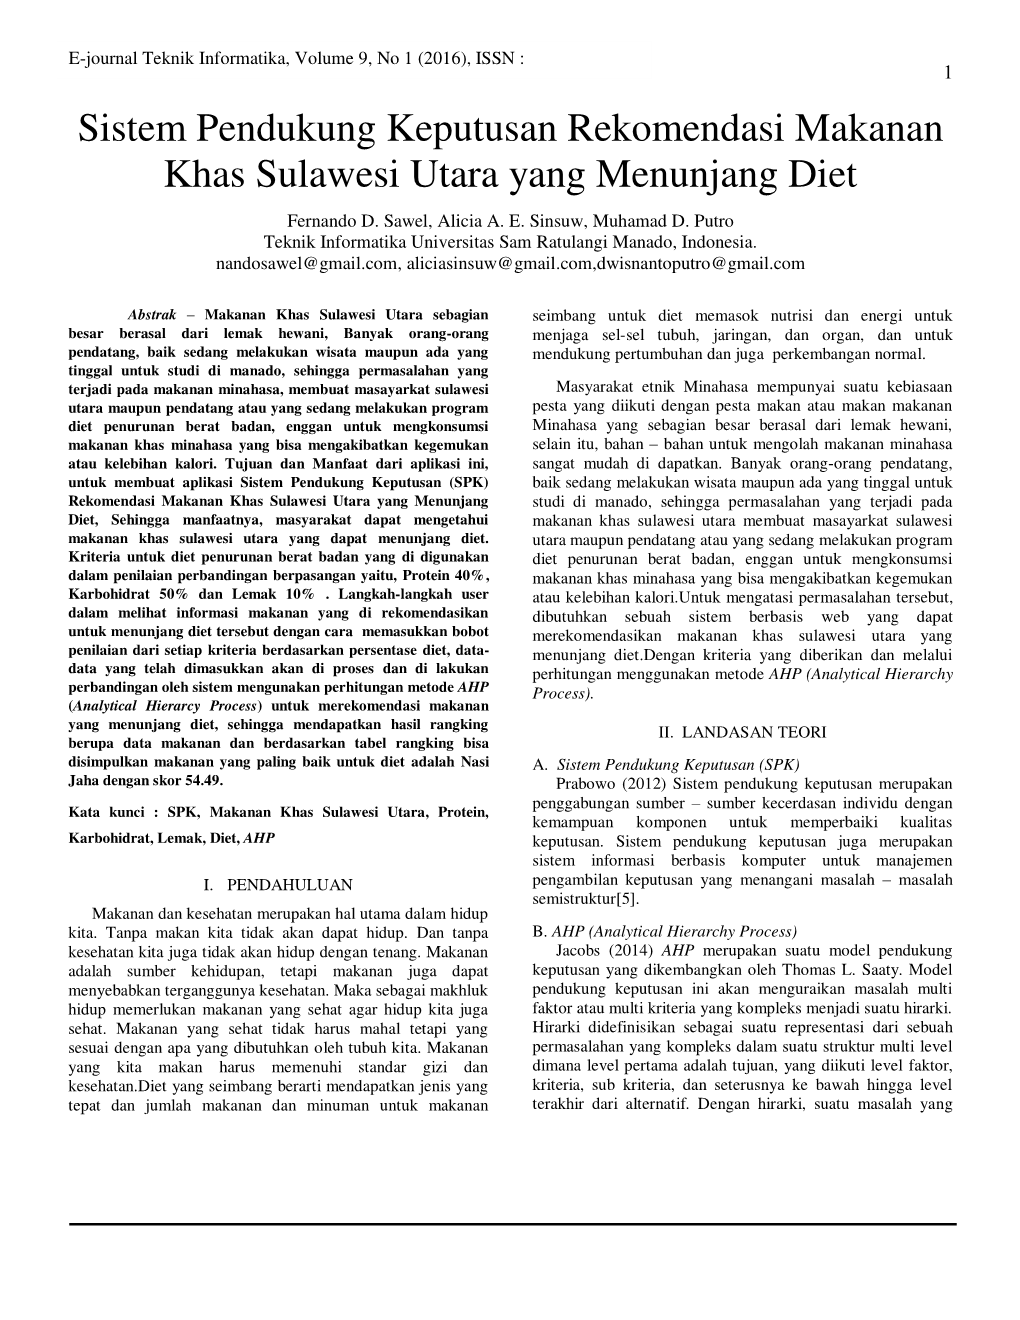 Sistem Pendukung Keputusan Rekomendasi Makanan Khas Sulawesi Utara Yang Menunjang Diet Fernando D